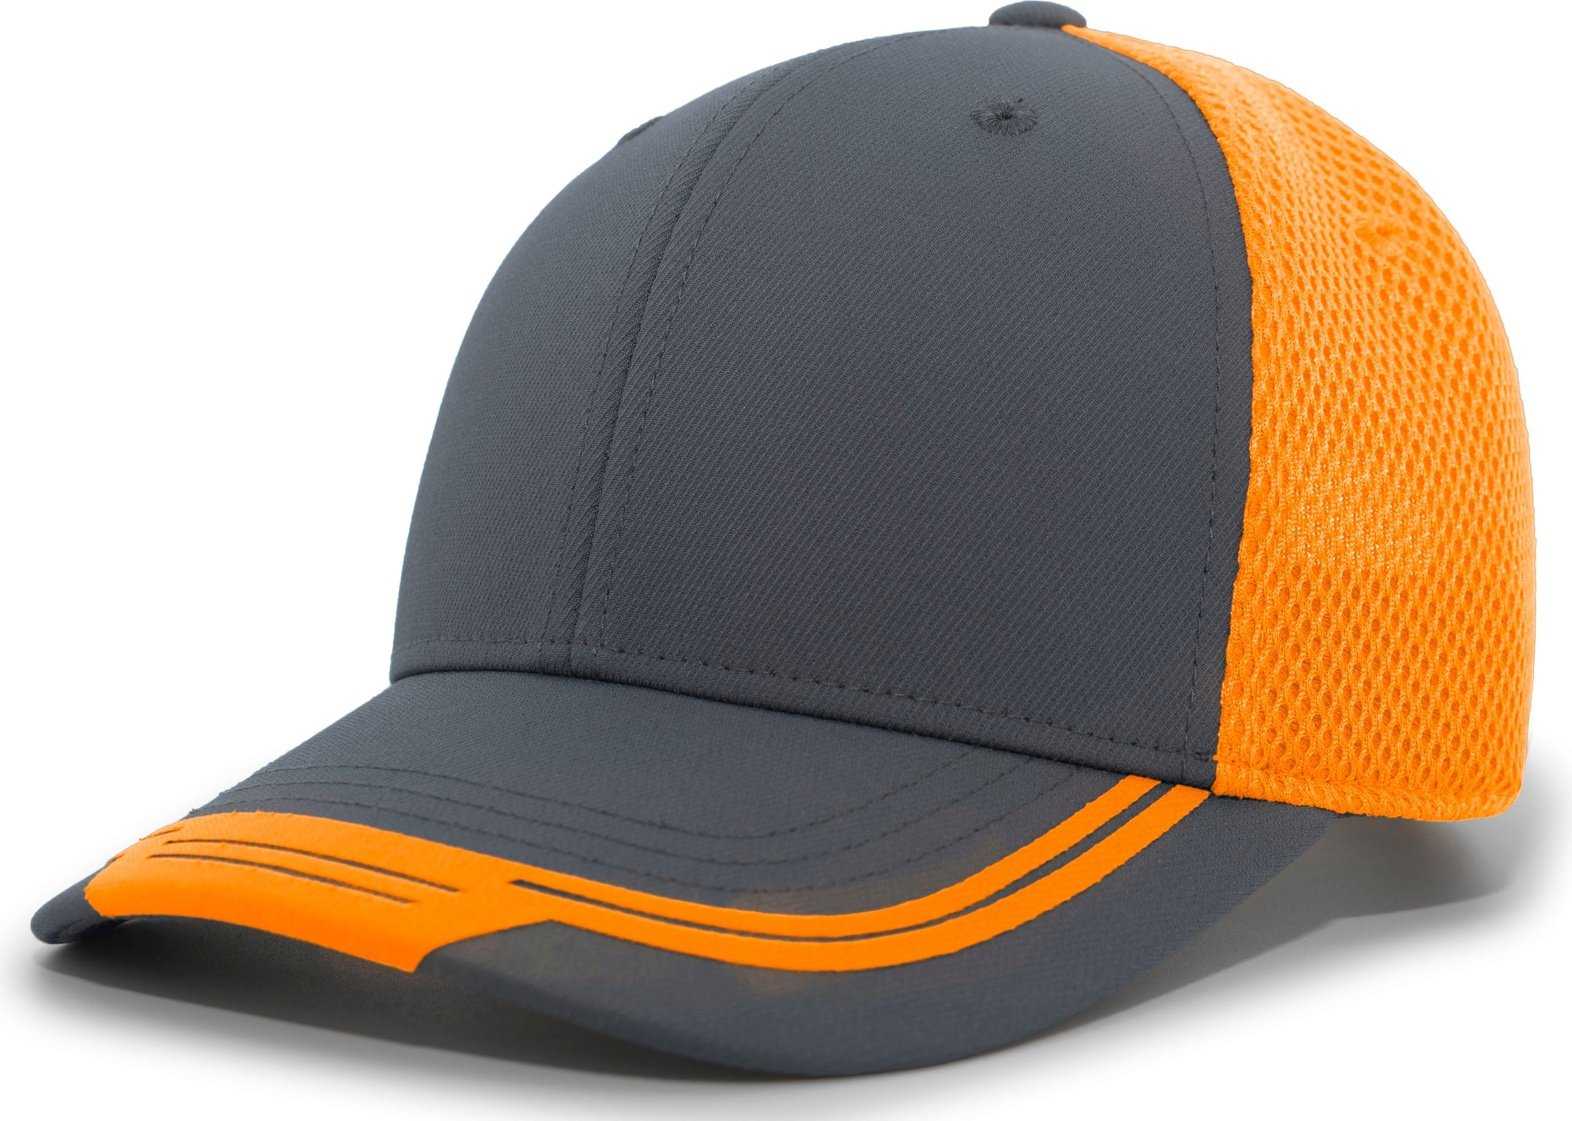 Pacific Headwear P301 Welded Sideline Cap - Carbon Orange Carbon - HIT a Double